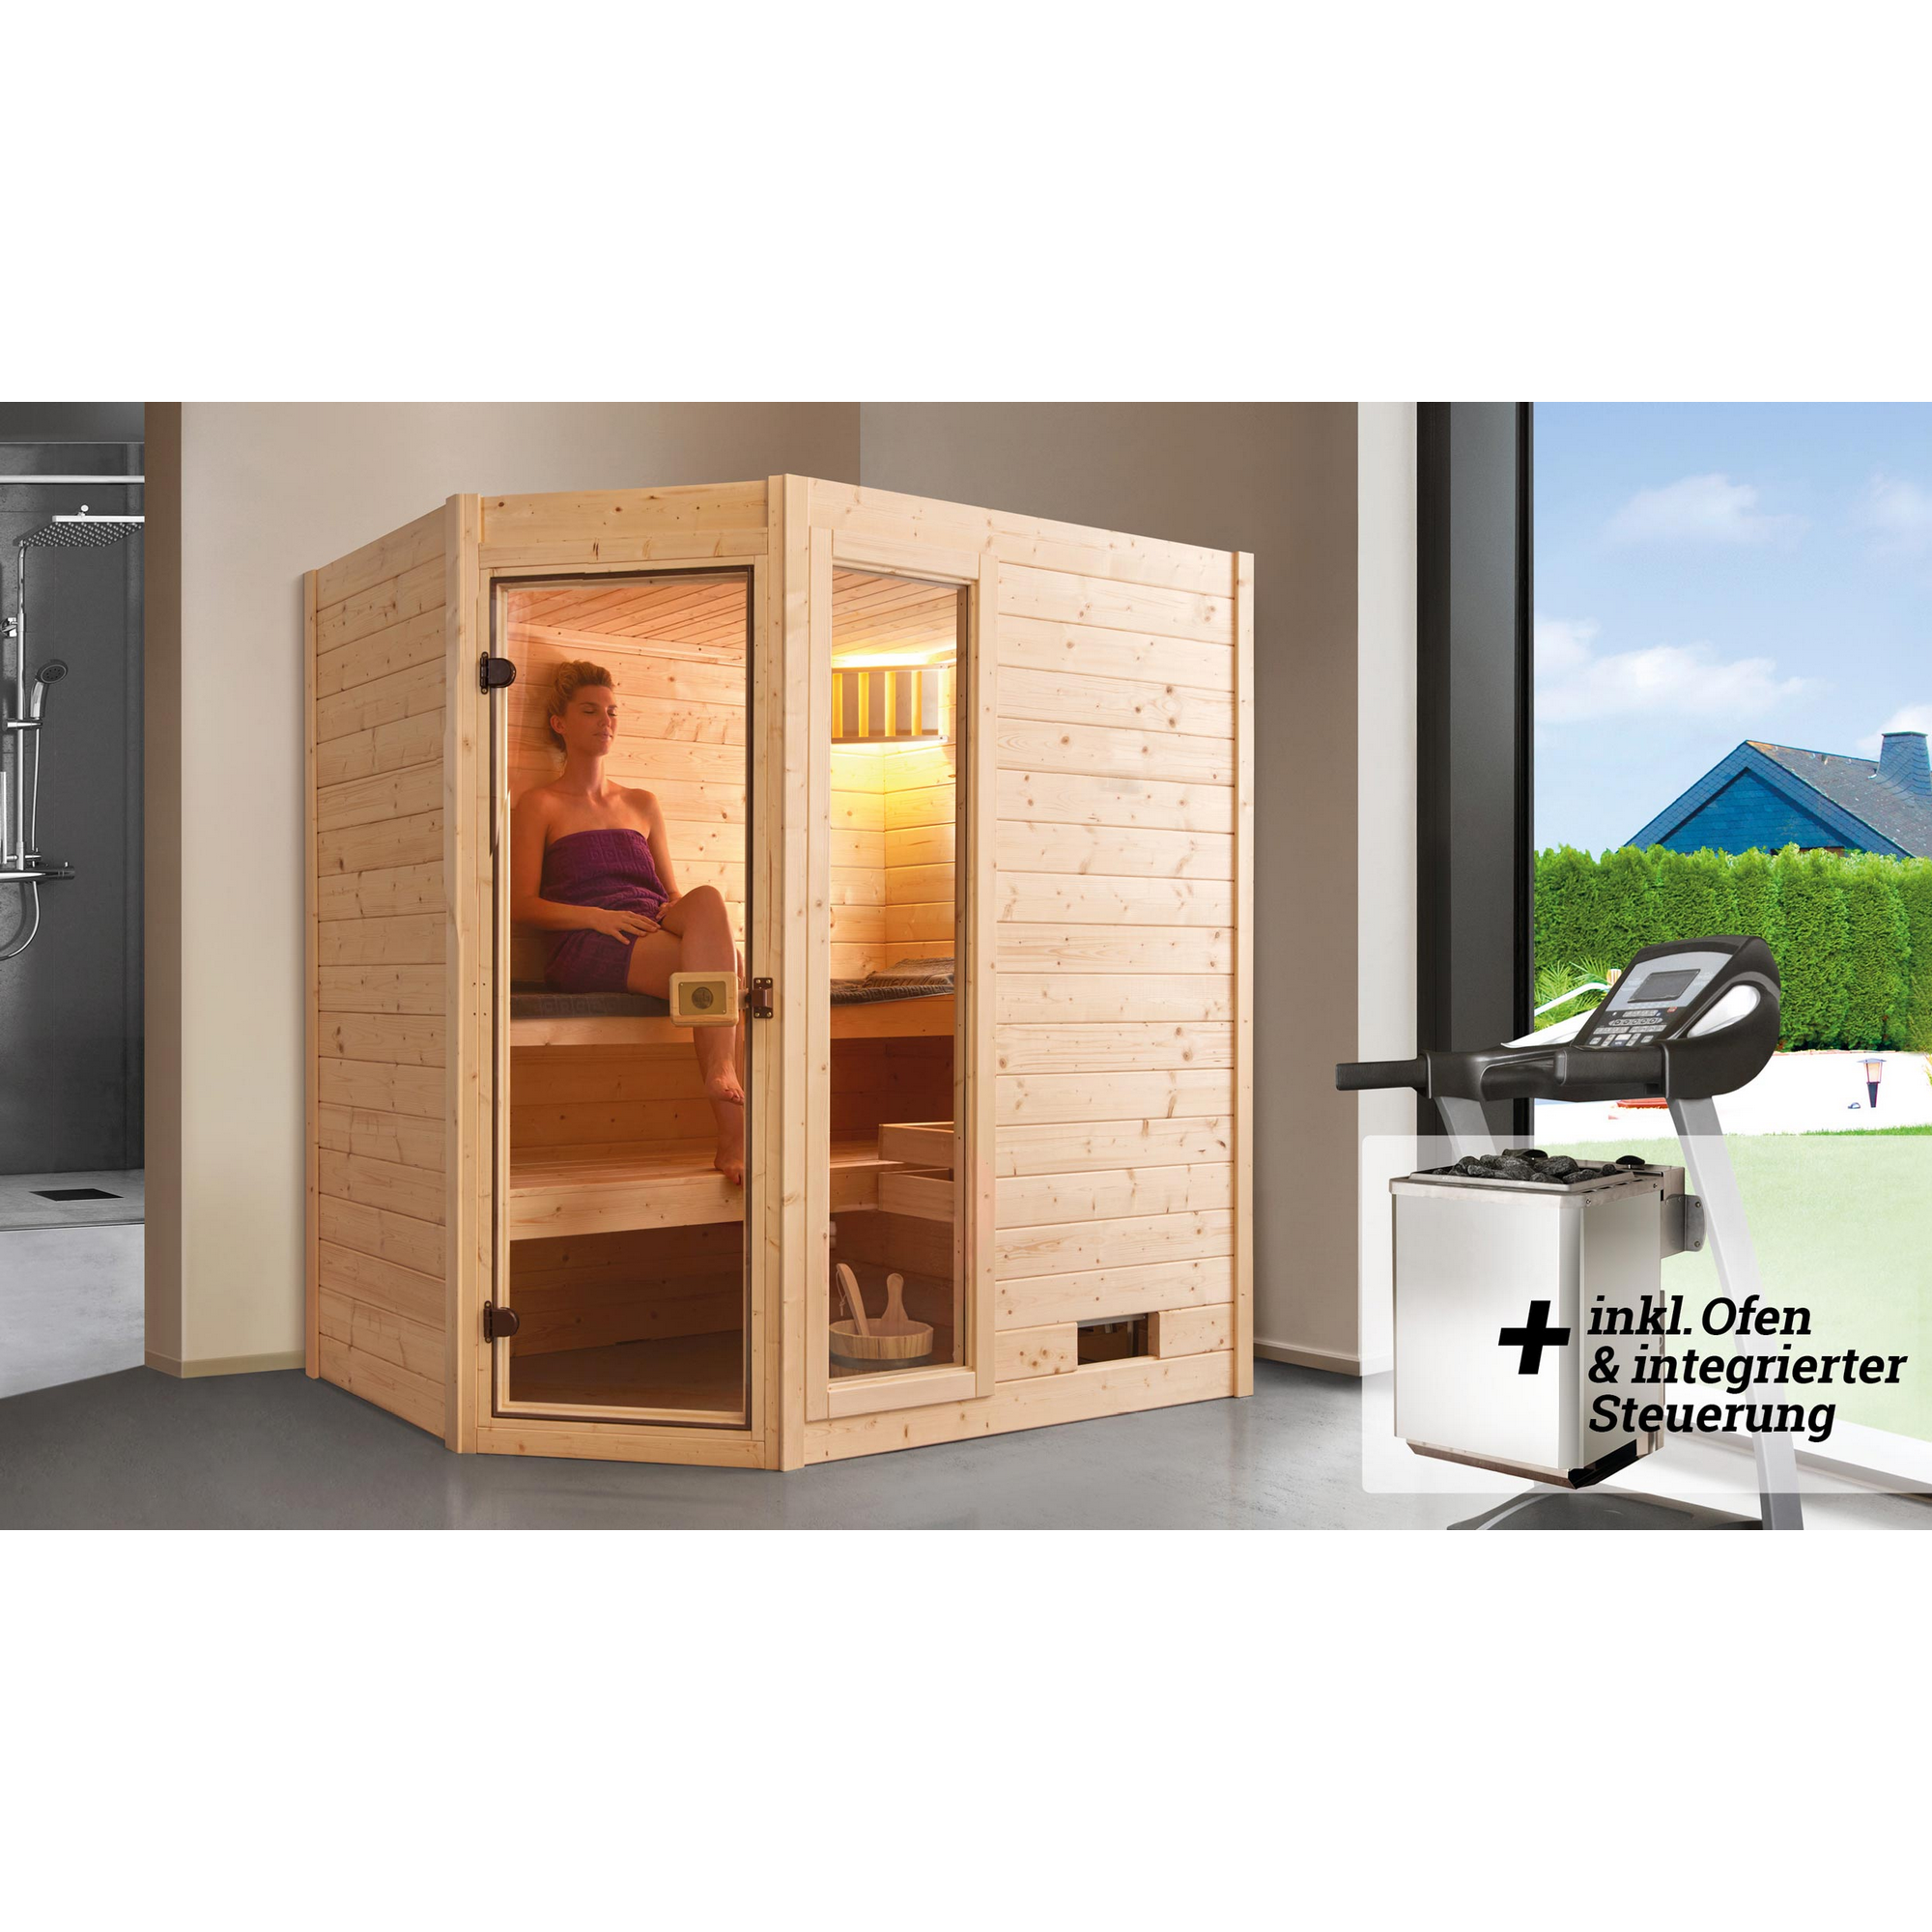 Massivholz-Sauna 'Valida 1 Eck' mit 5,4 kW K-Ofenset, integrierter Steuerung, Glastür, Fenster 187 x 137 x 203,5 cm + product picture